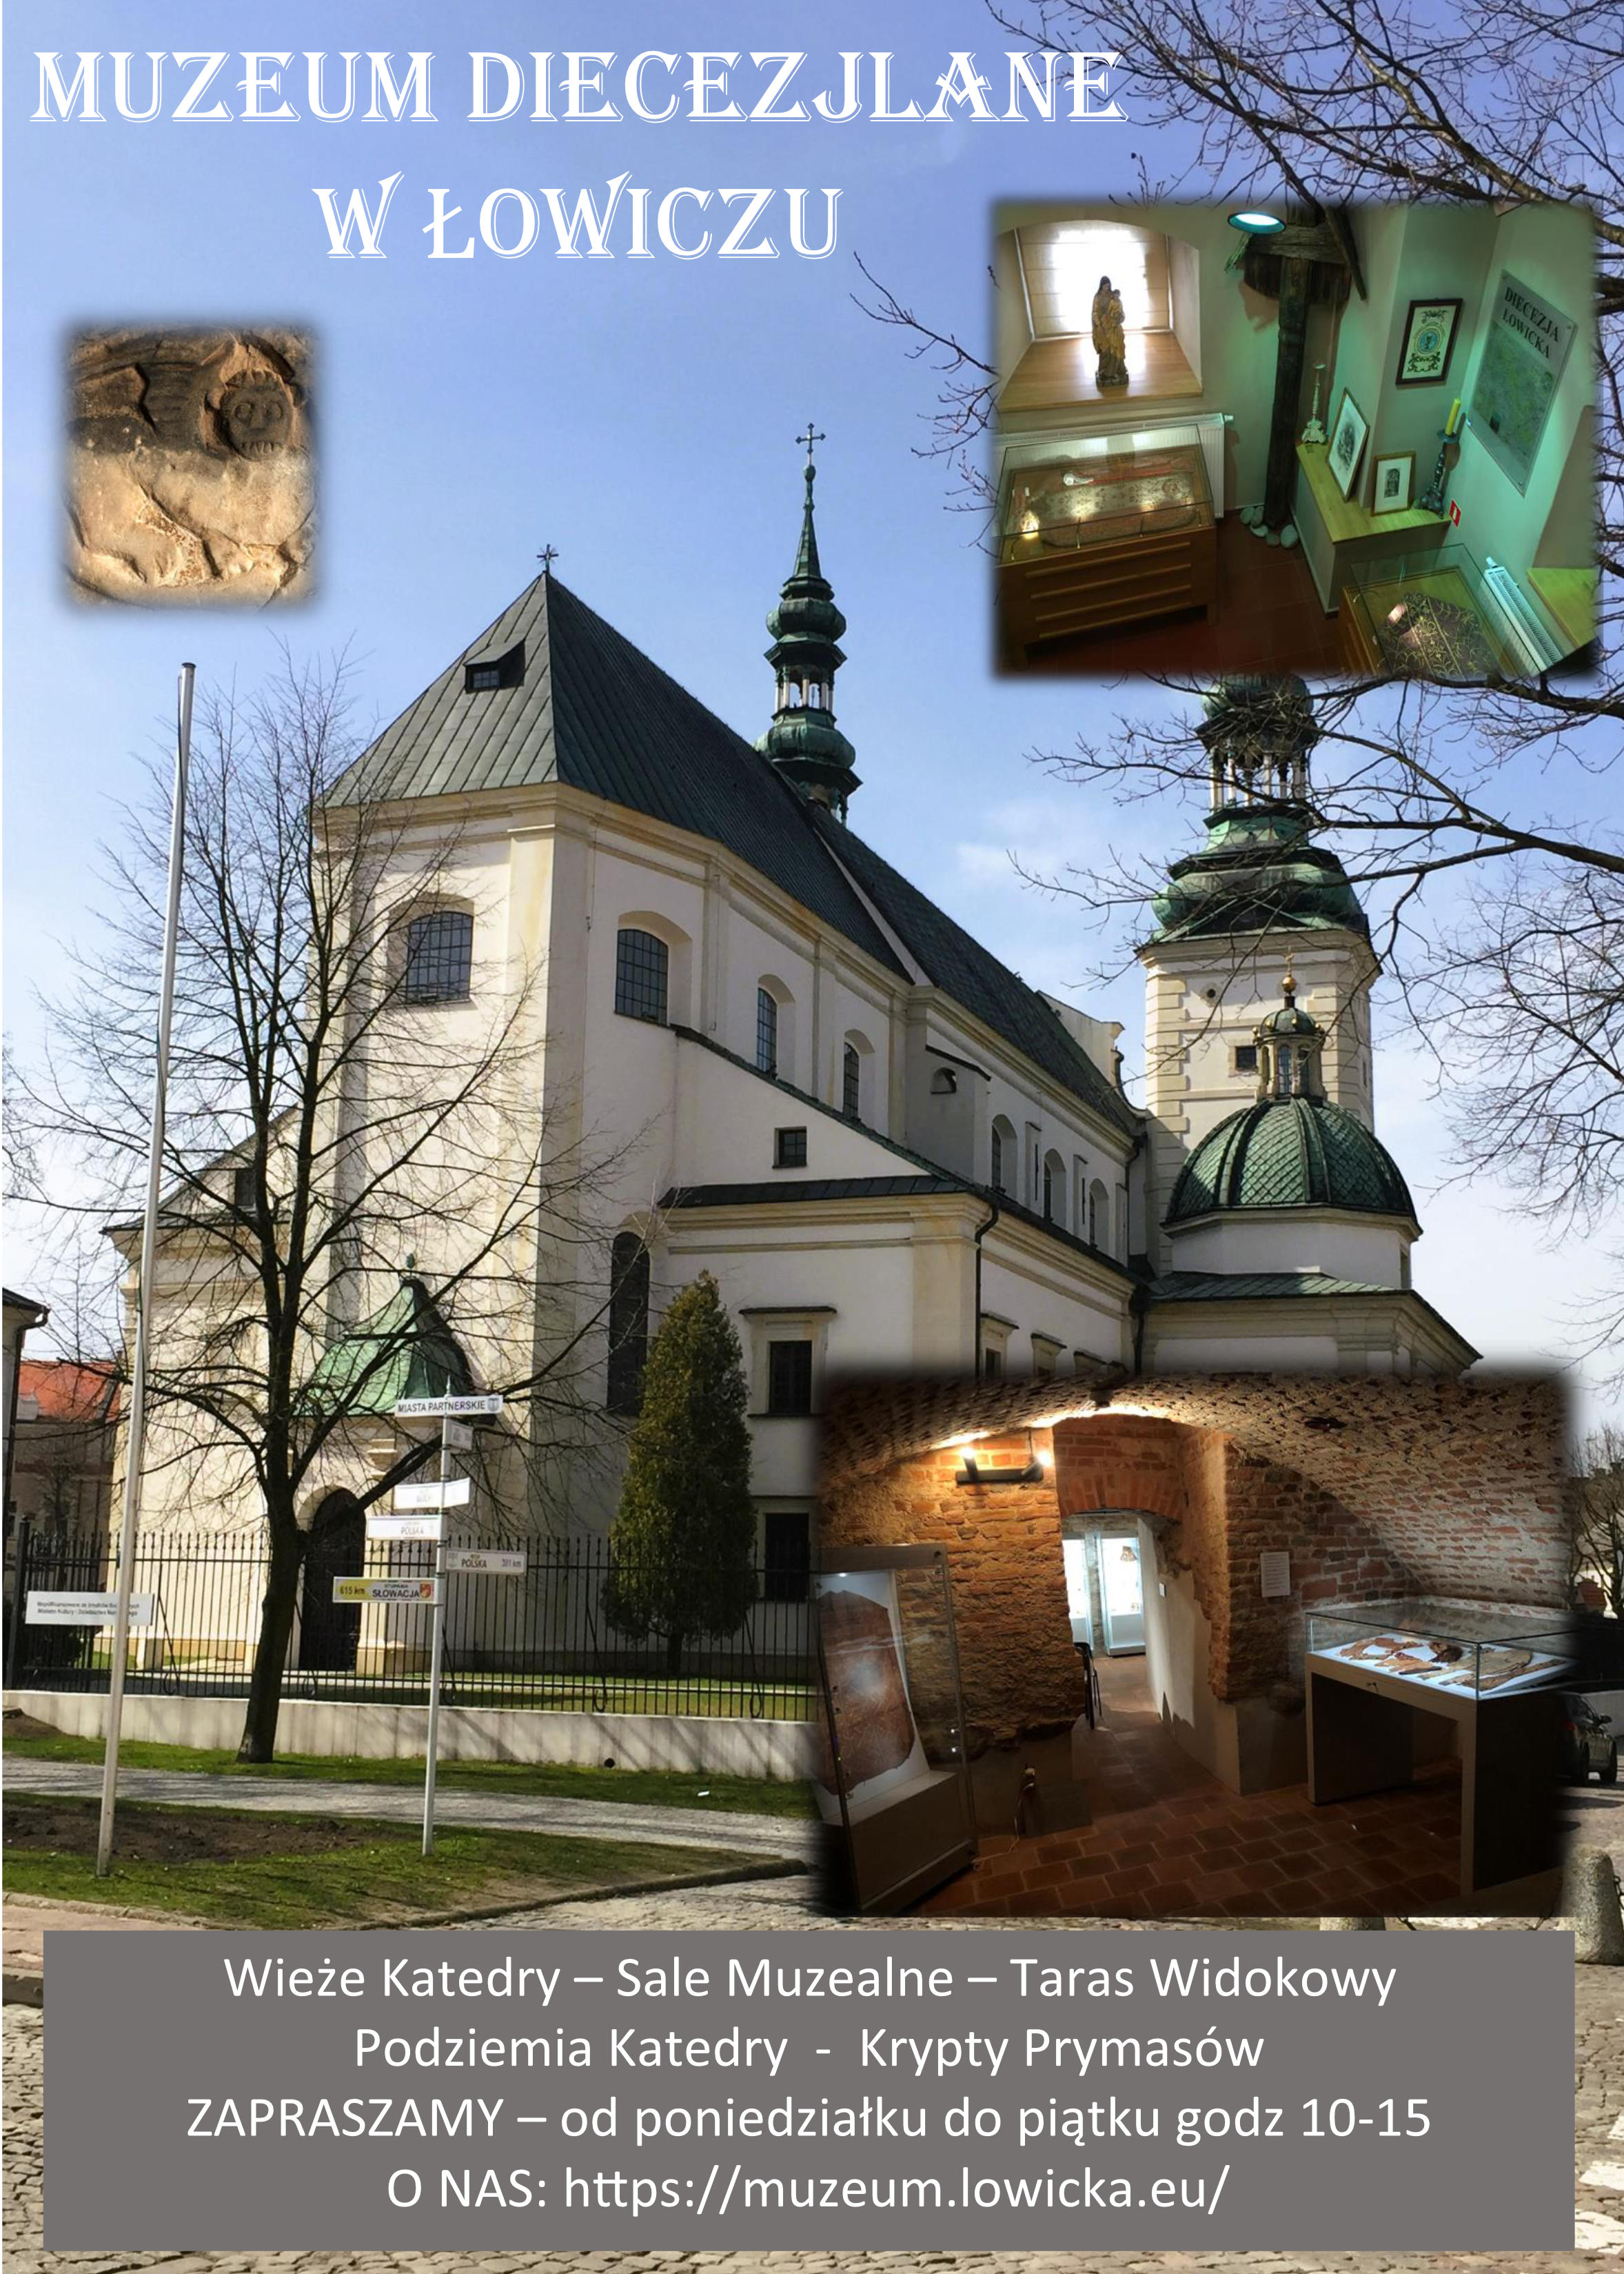 Zaproszenie do Muzeum Diecezjalnego w Łowiczu